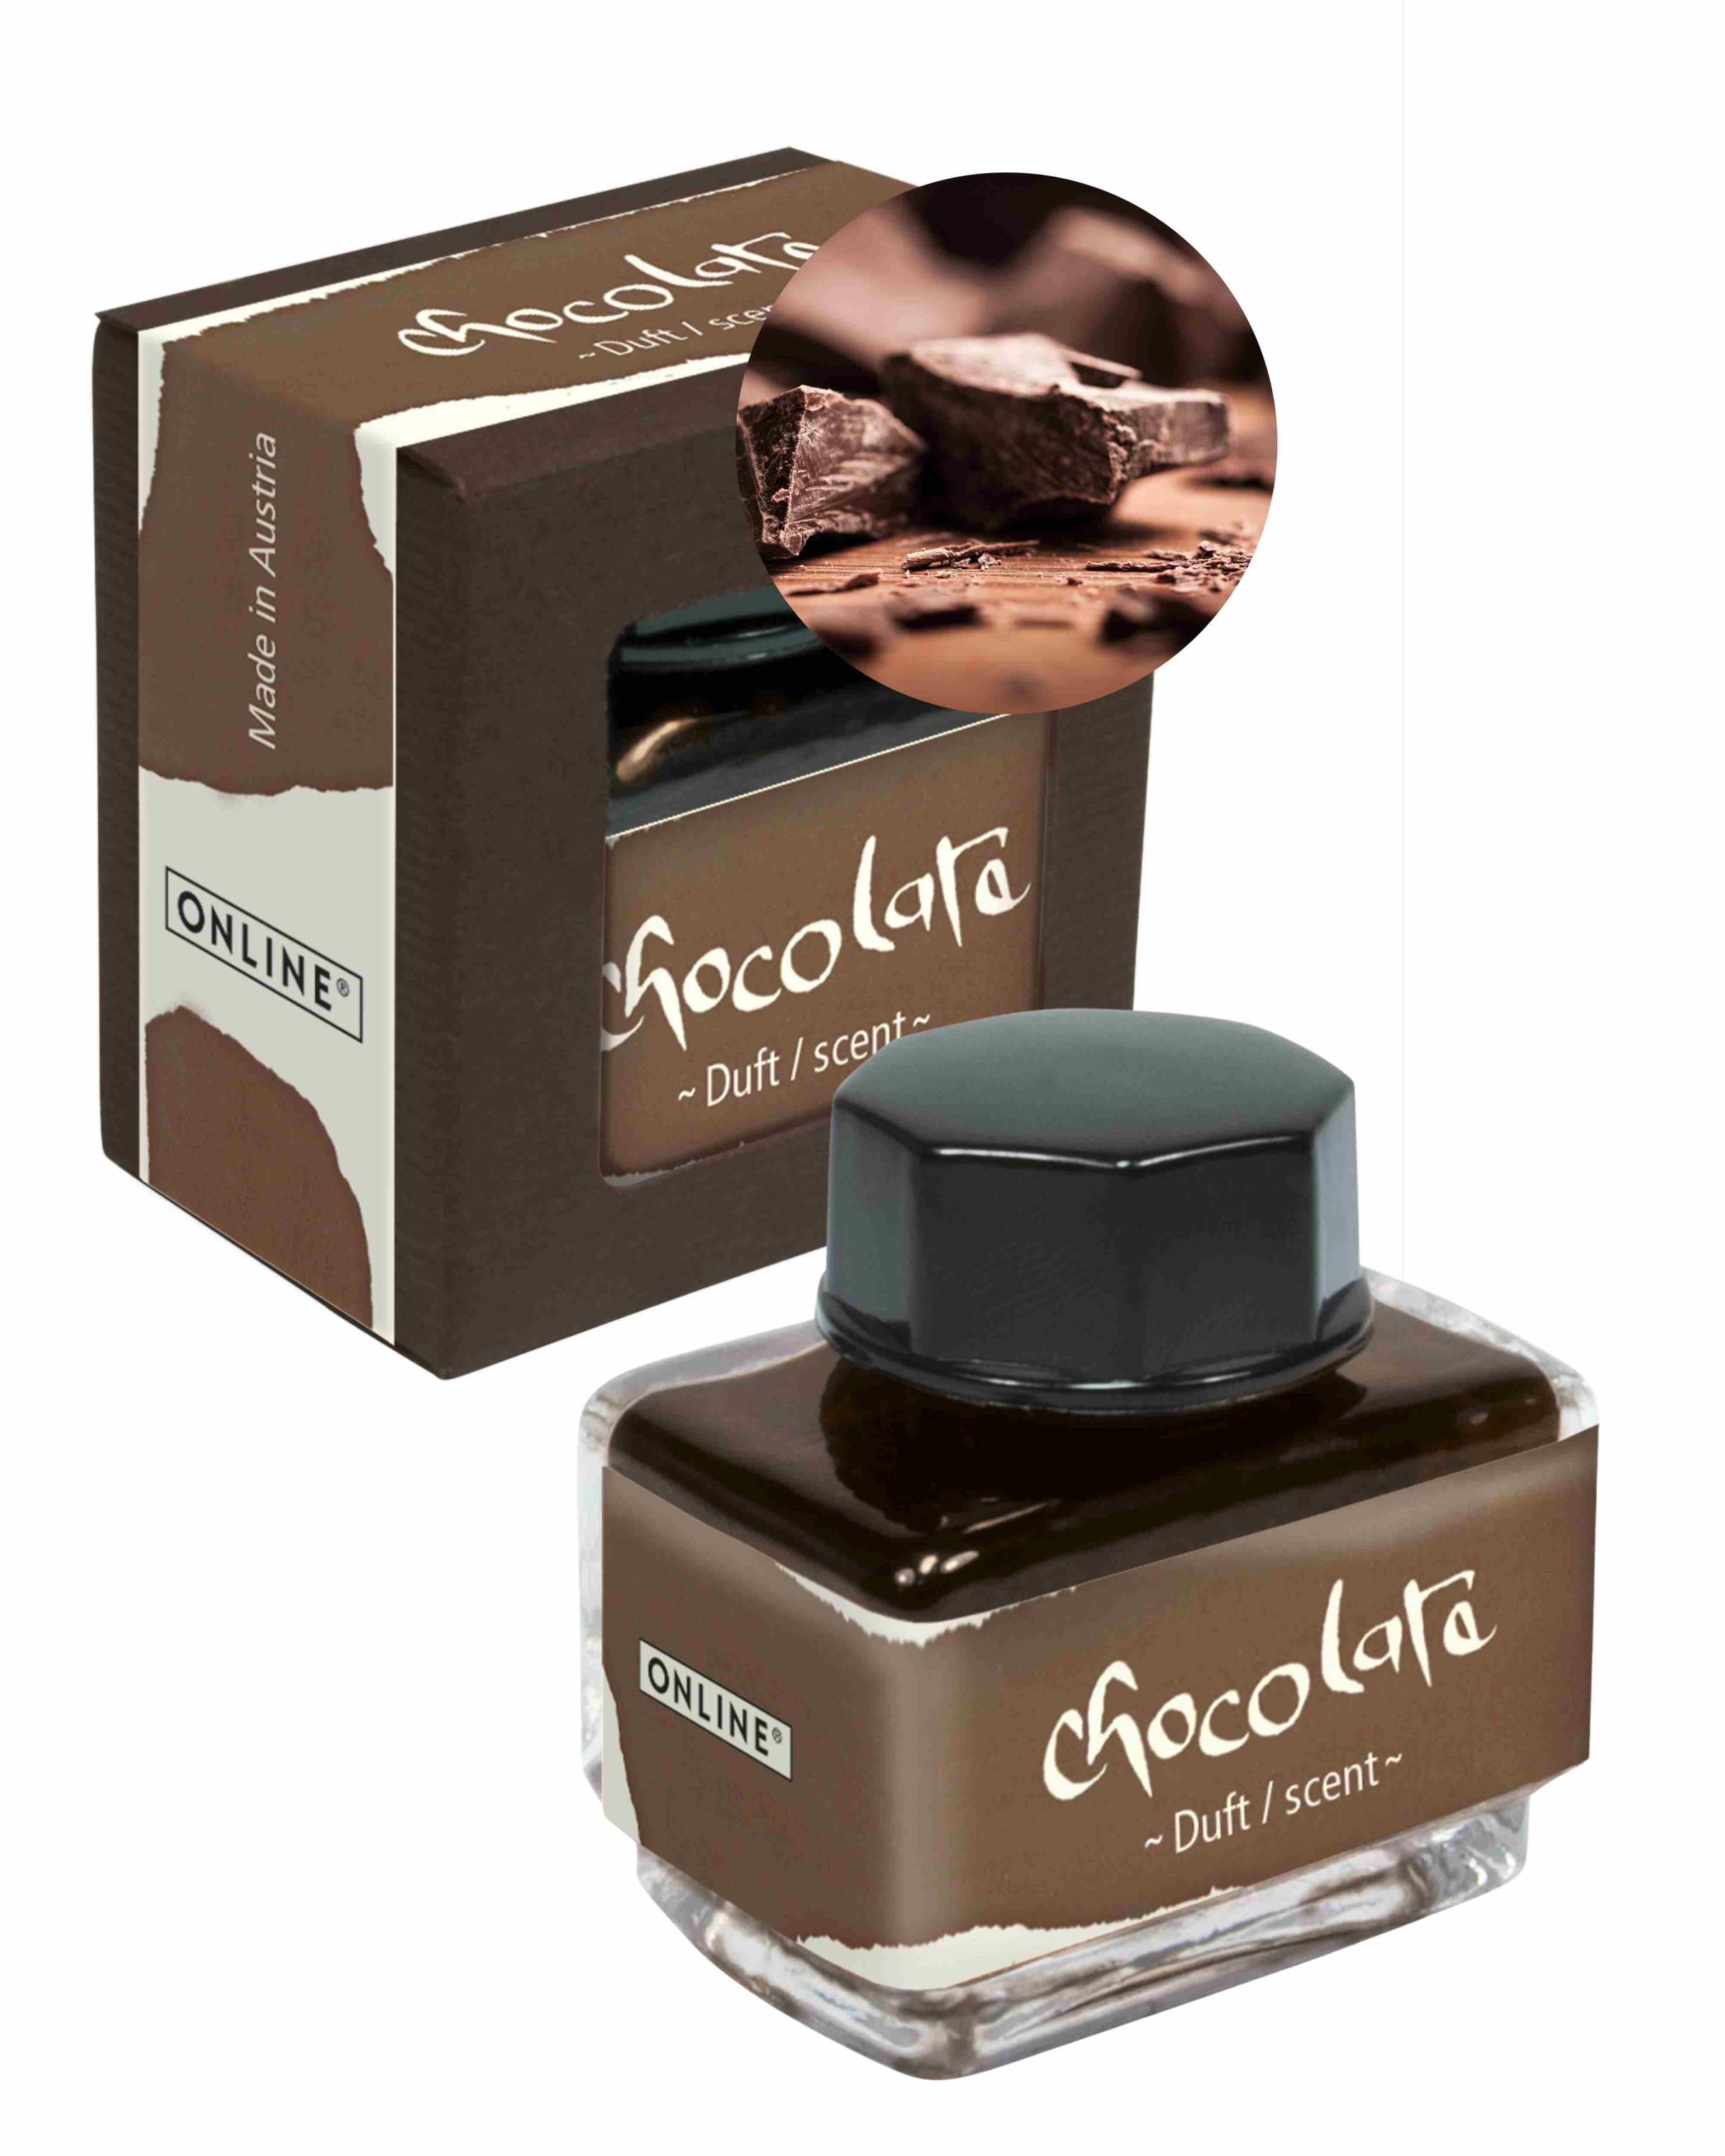 Tinte der Sinne 15 ml mit Duft - Aroma Schokolade